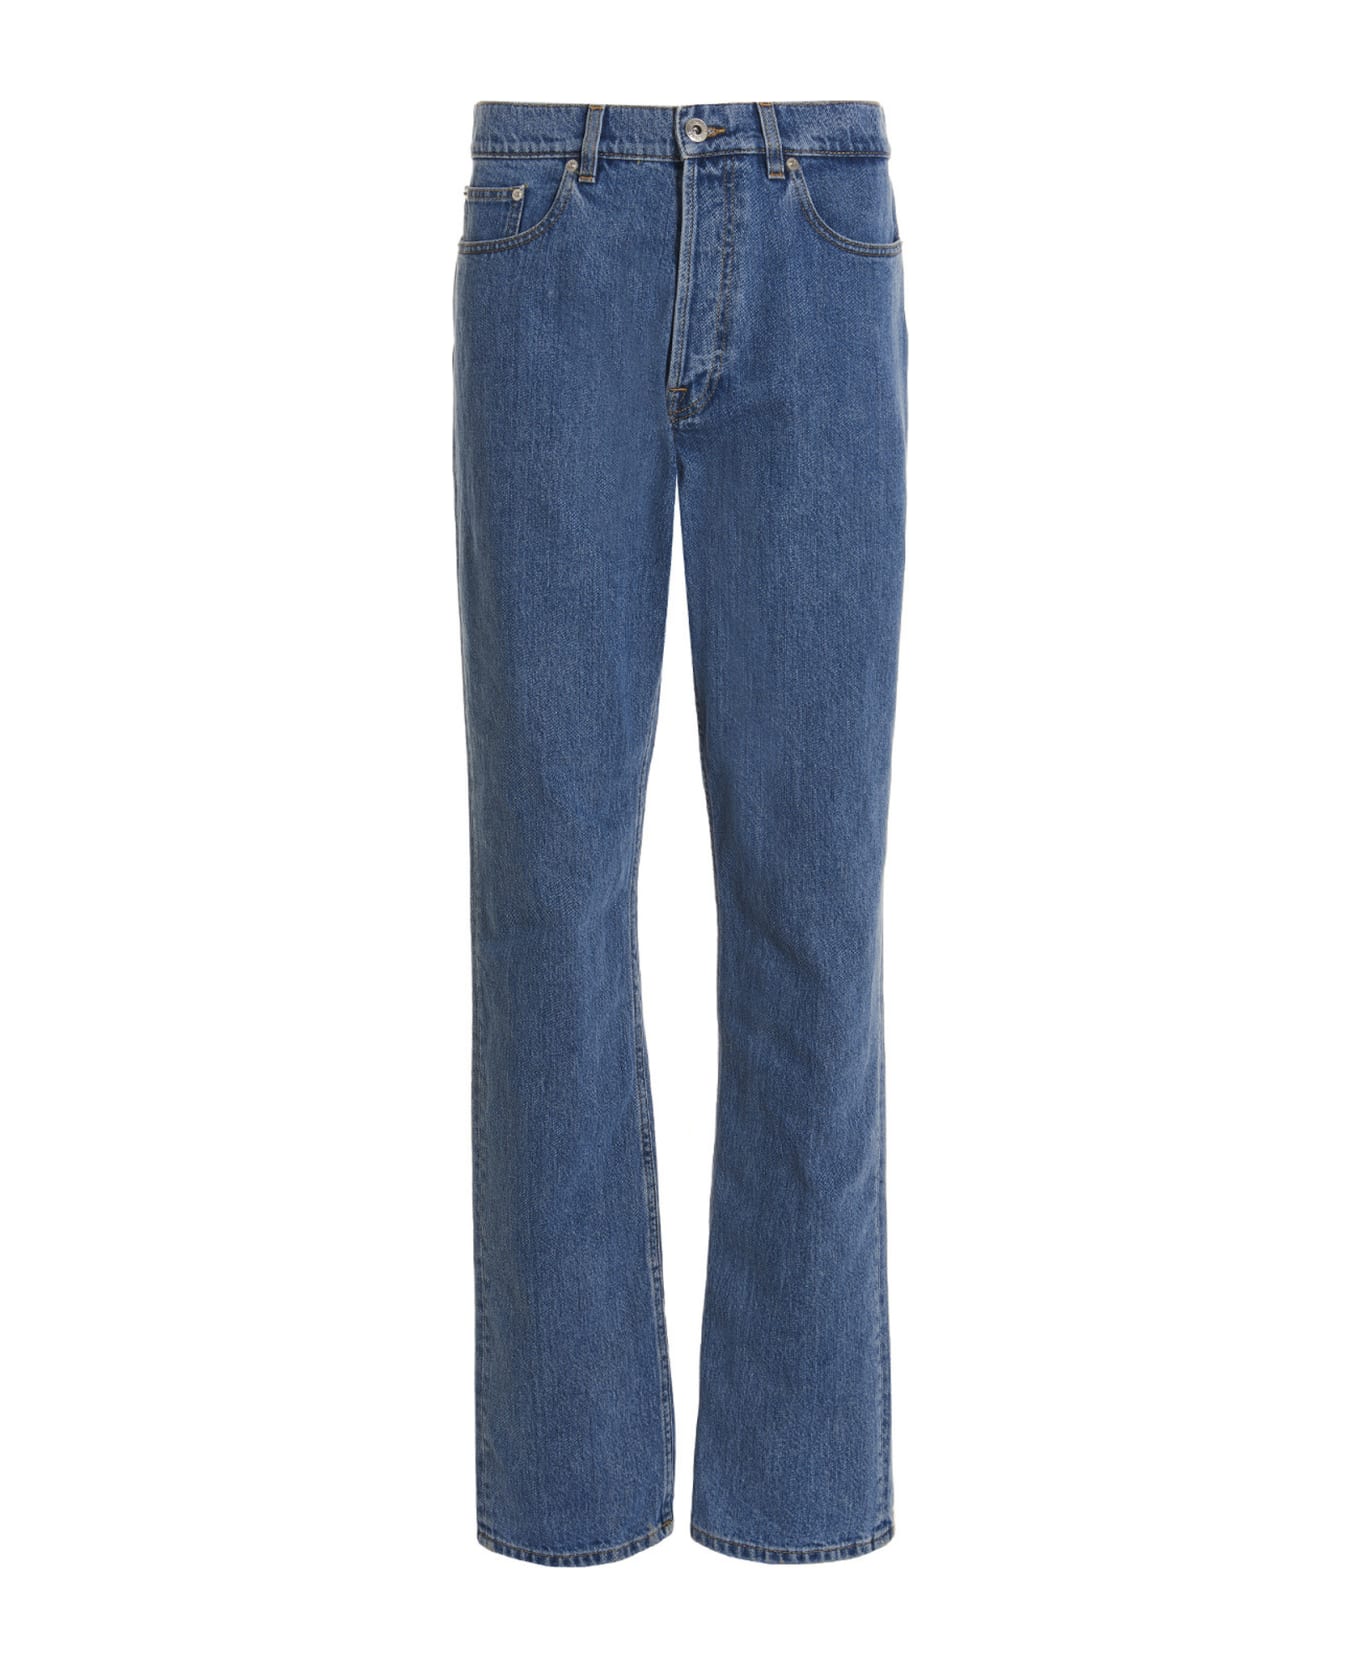 Lanvin Curb Fit Jeans - Blue